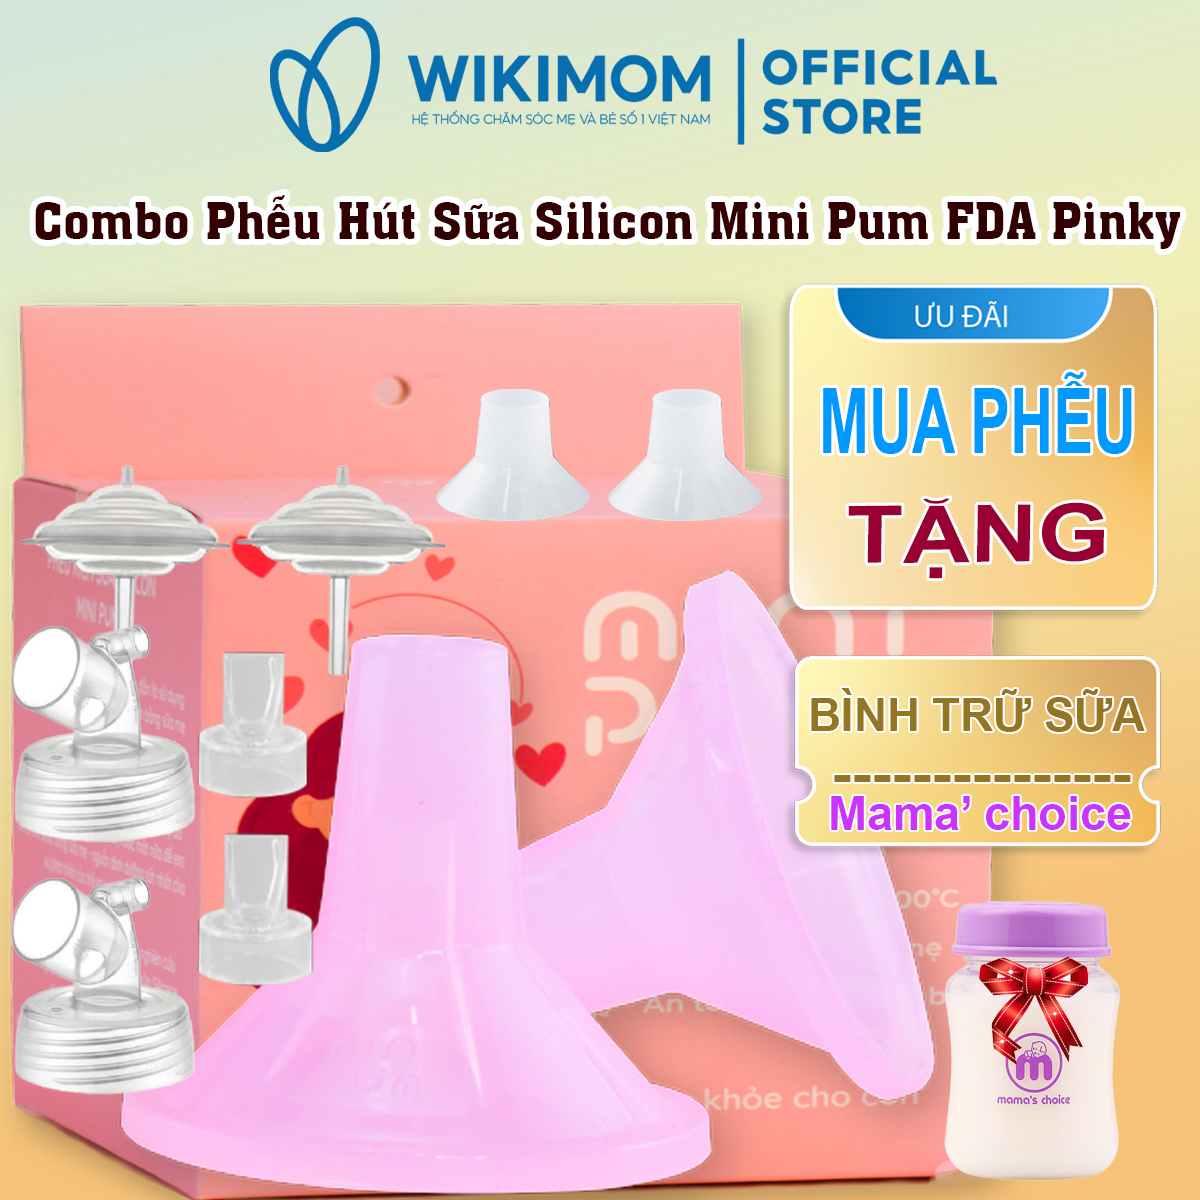 Phễu Minipum FDA Pinky và phụ kiện gồm 2 cổ nối rộng